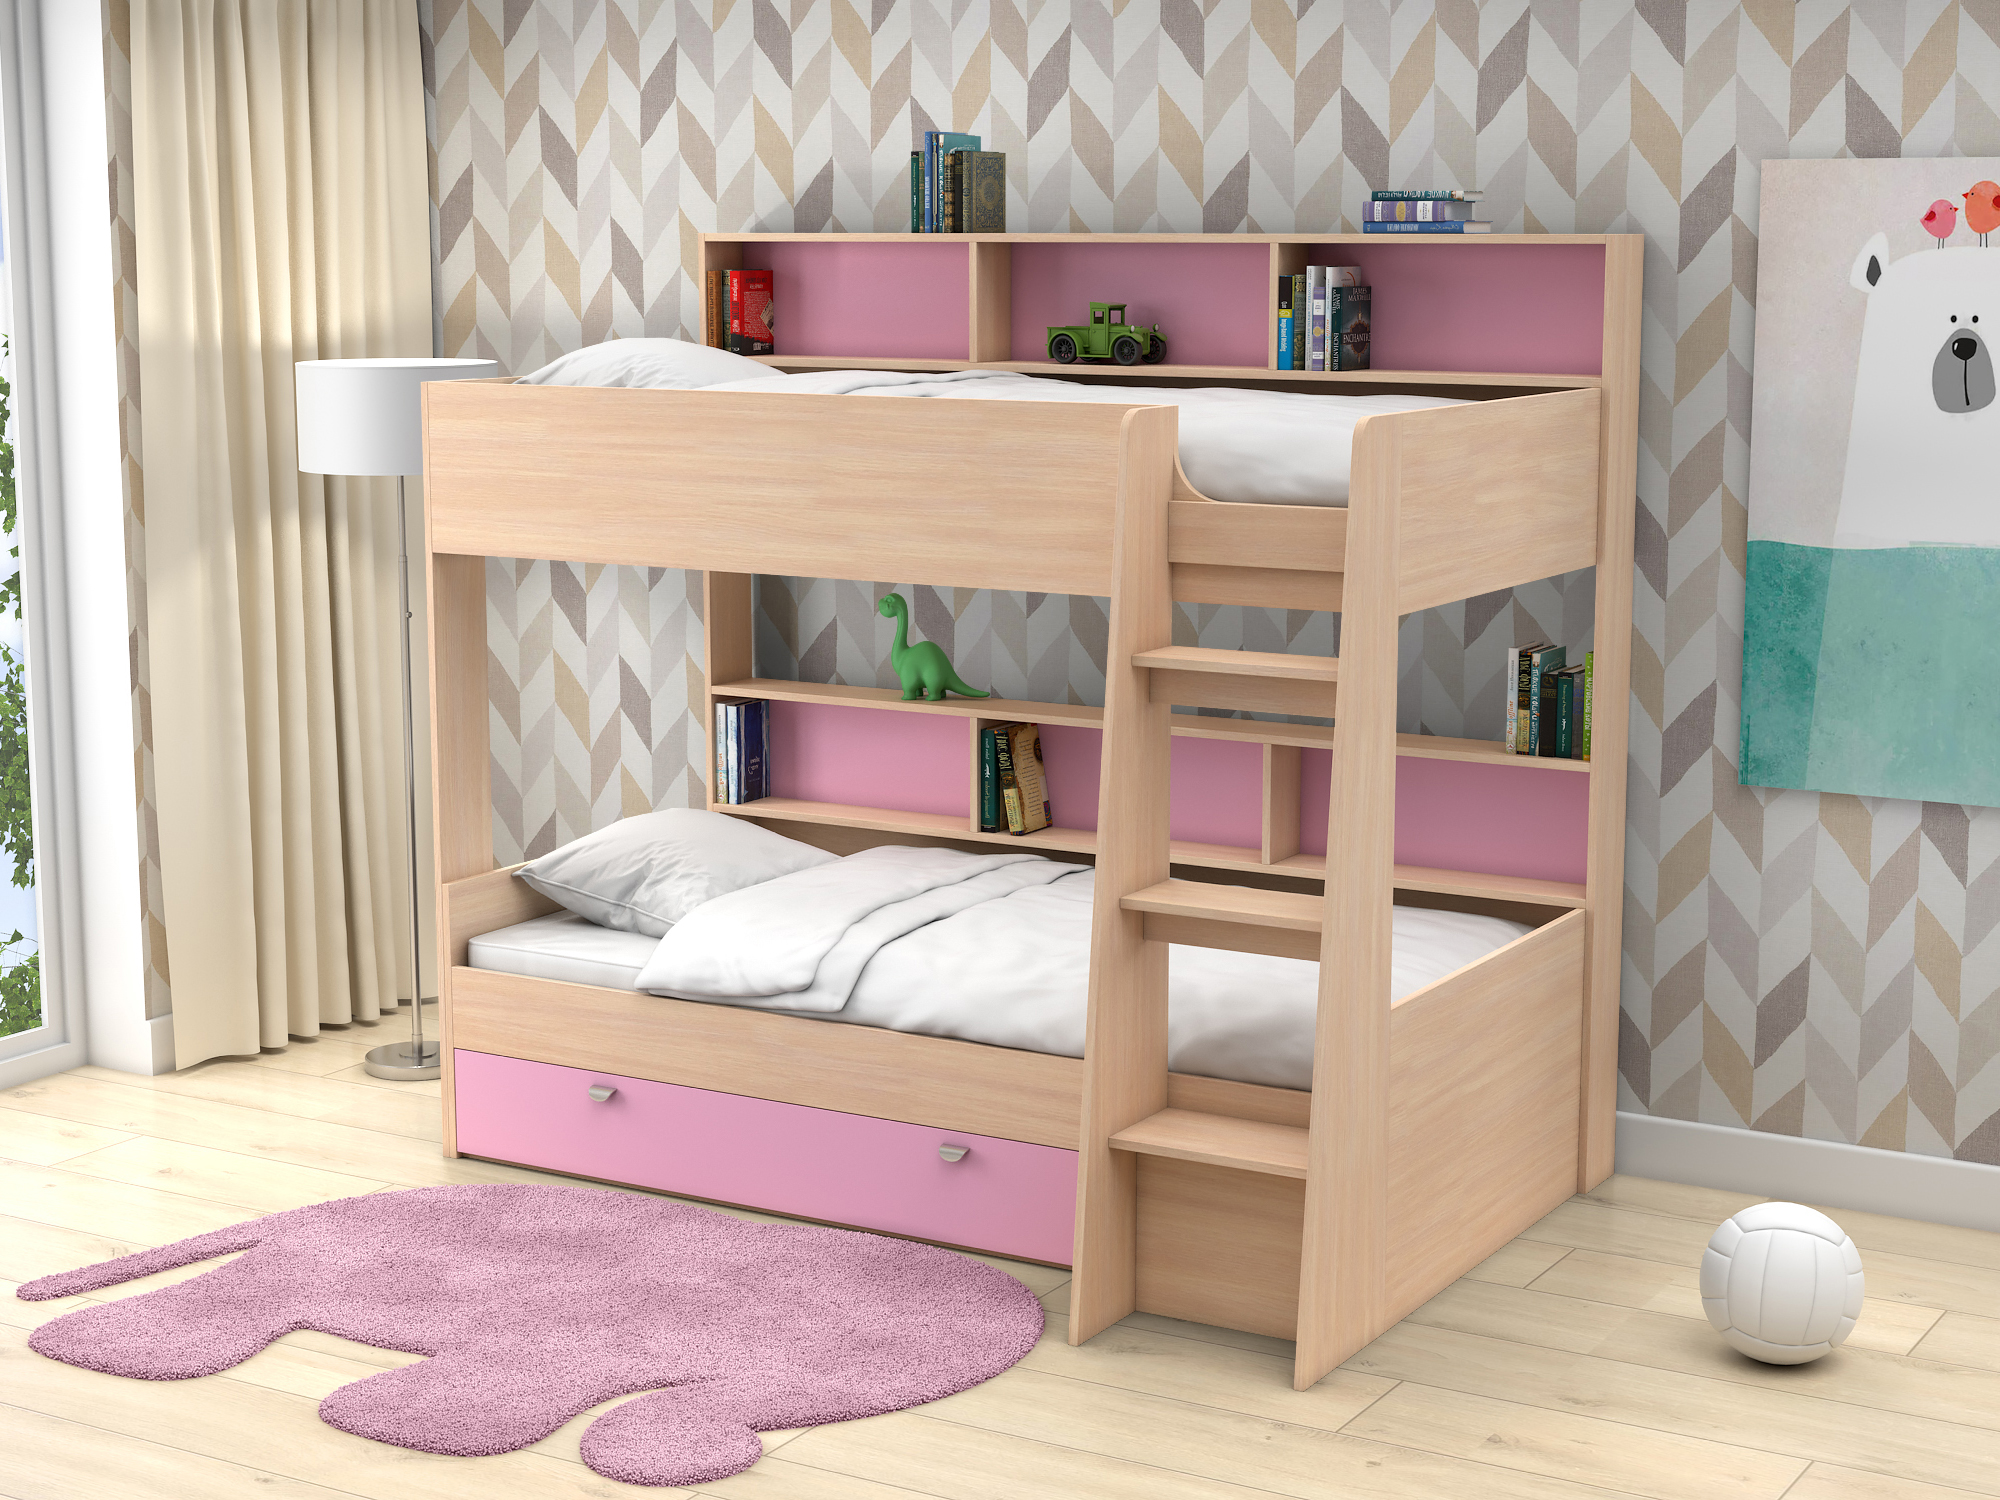 Двухъярусная кровать Golden Kids-1 (90х200) Розовый, Белый, Бежевый, ЛДСП кровати для подростков белый слон plus golden kids 1 двухъярусная дуб молочный